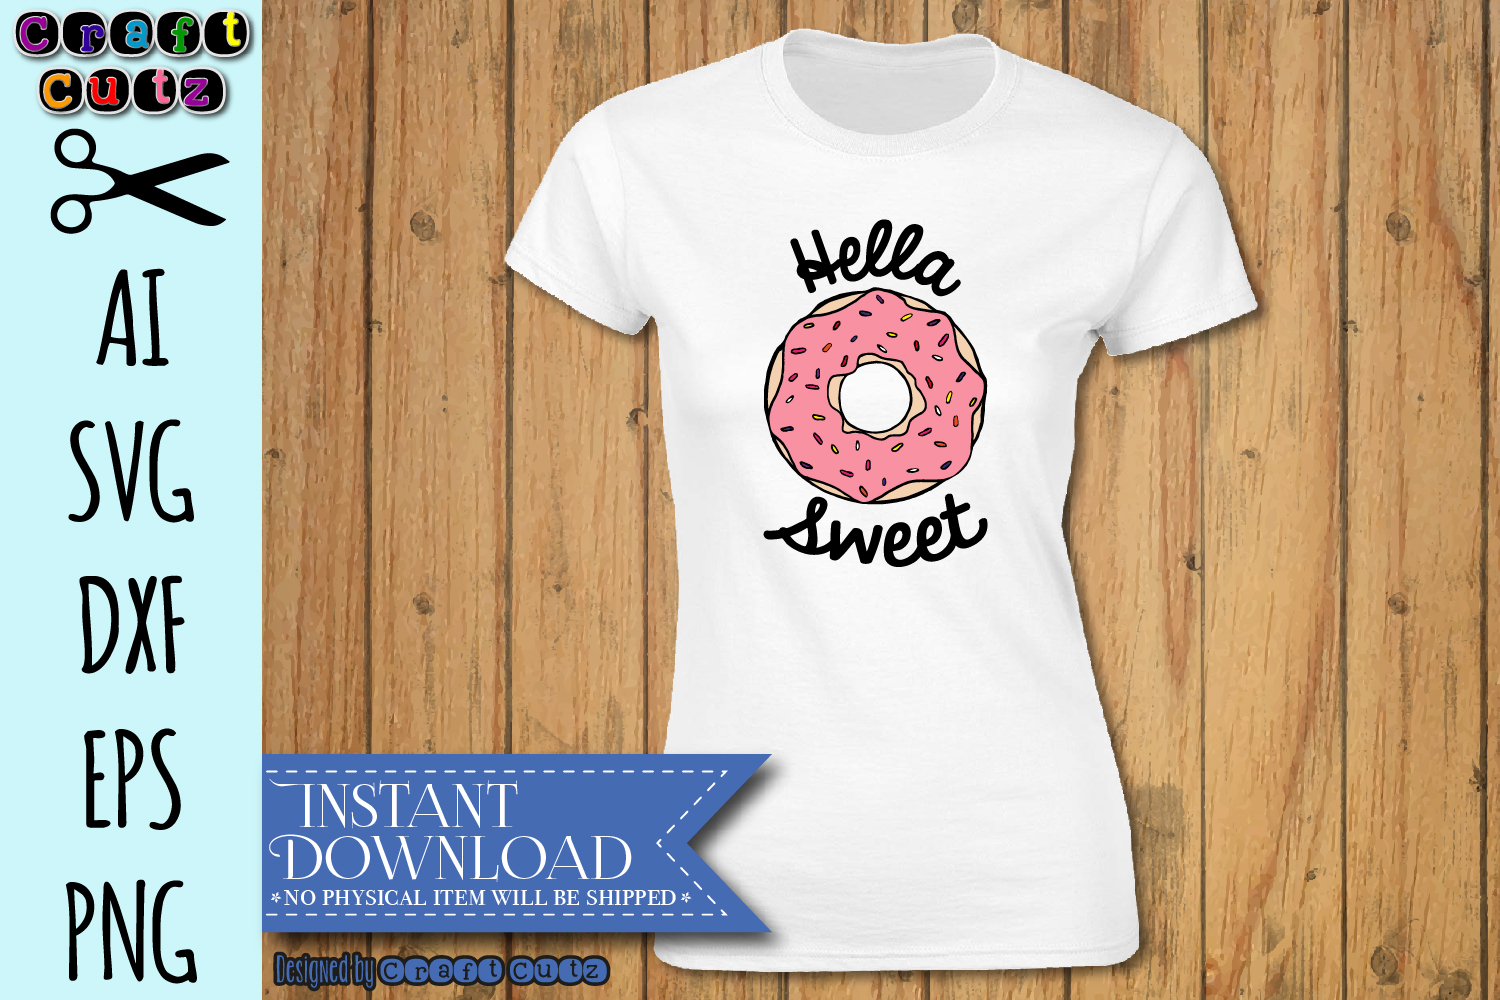 Download Donut SVG, Hella Sweet svg, Baker SVG, Cute Dessert svg